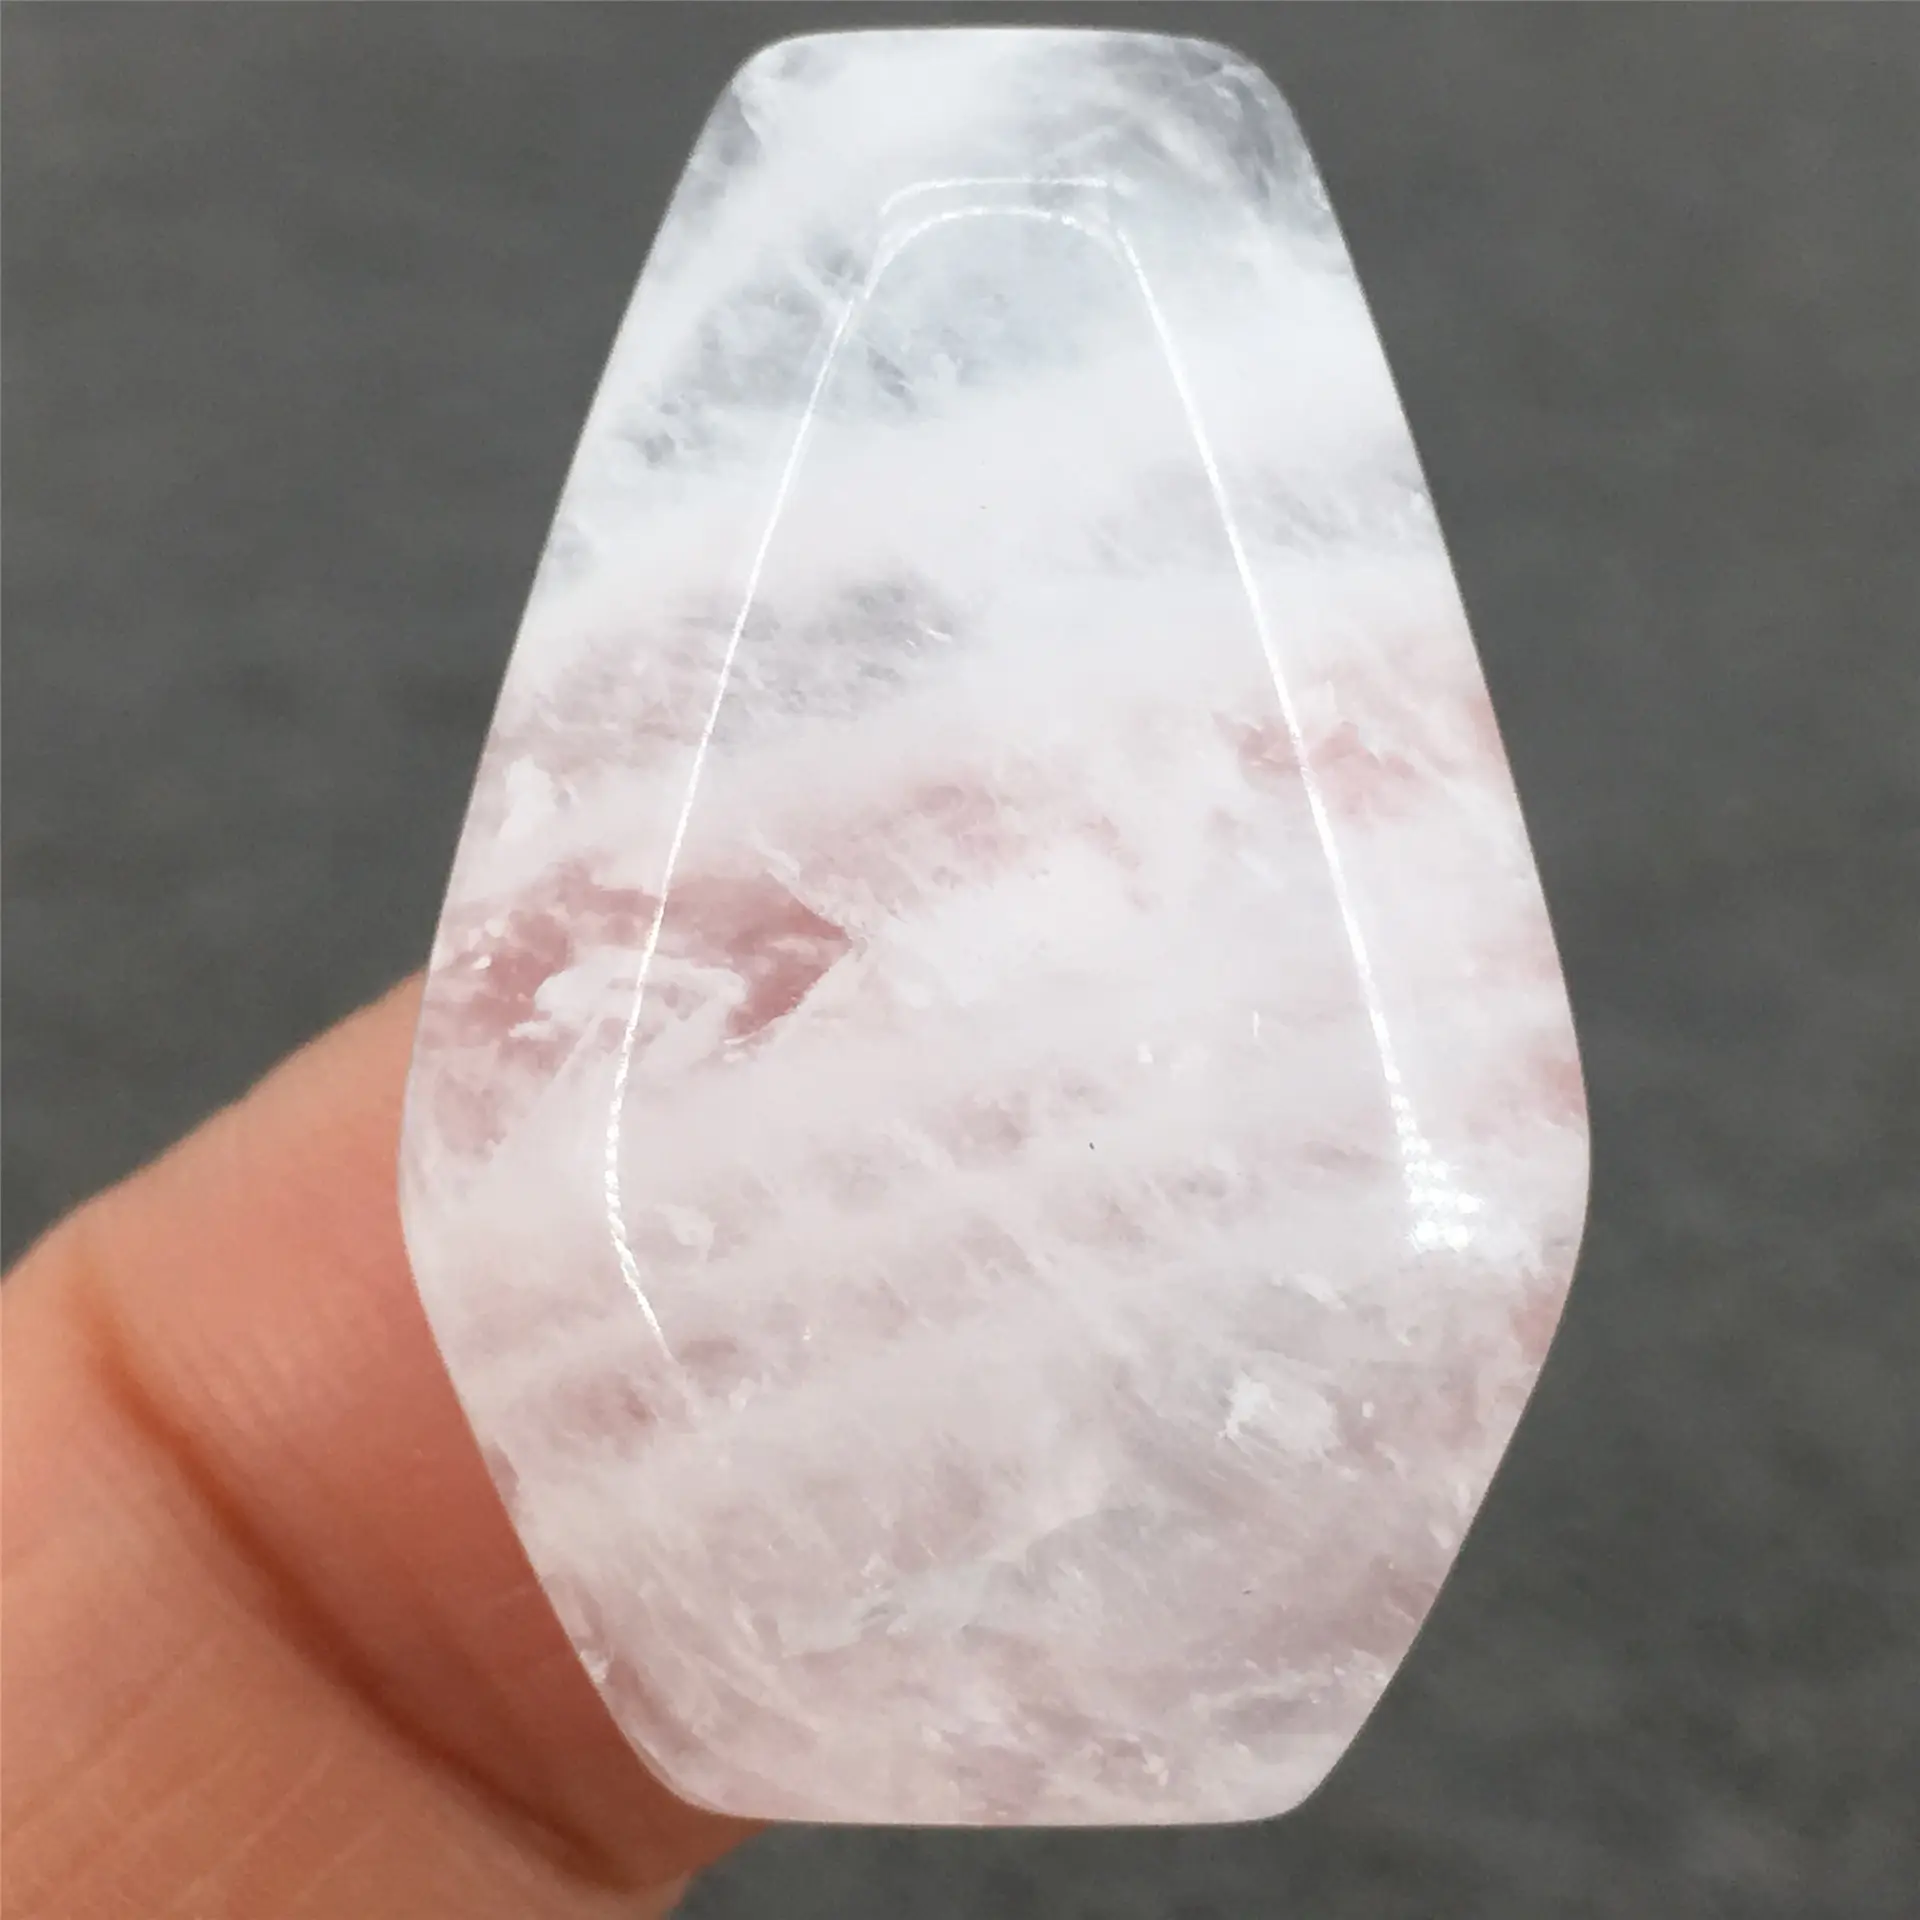 Commercio all'ingrosso di cristallo caldo artigianato di cristallo curativo di pietra intaglio di pietra di cristallo rosa ametista tavola della bara per il regalo